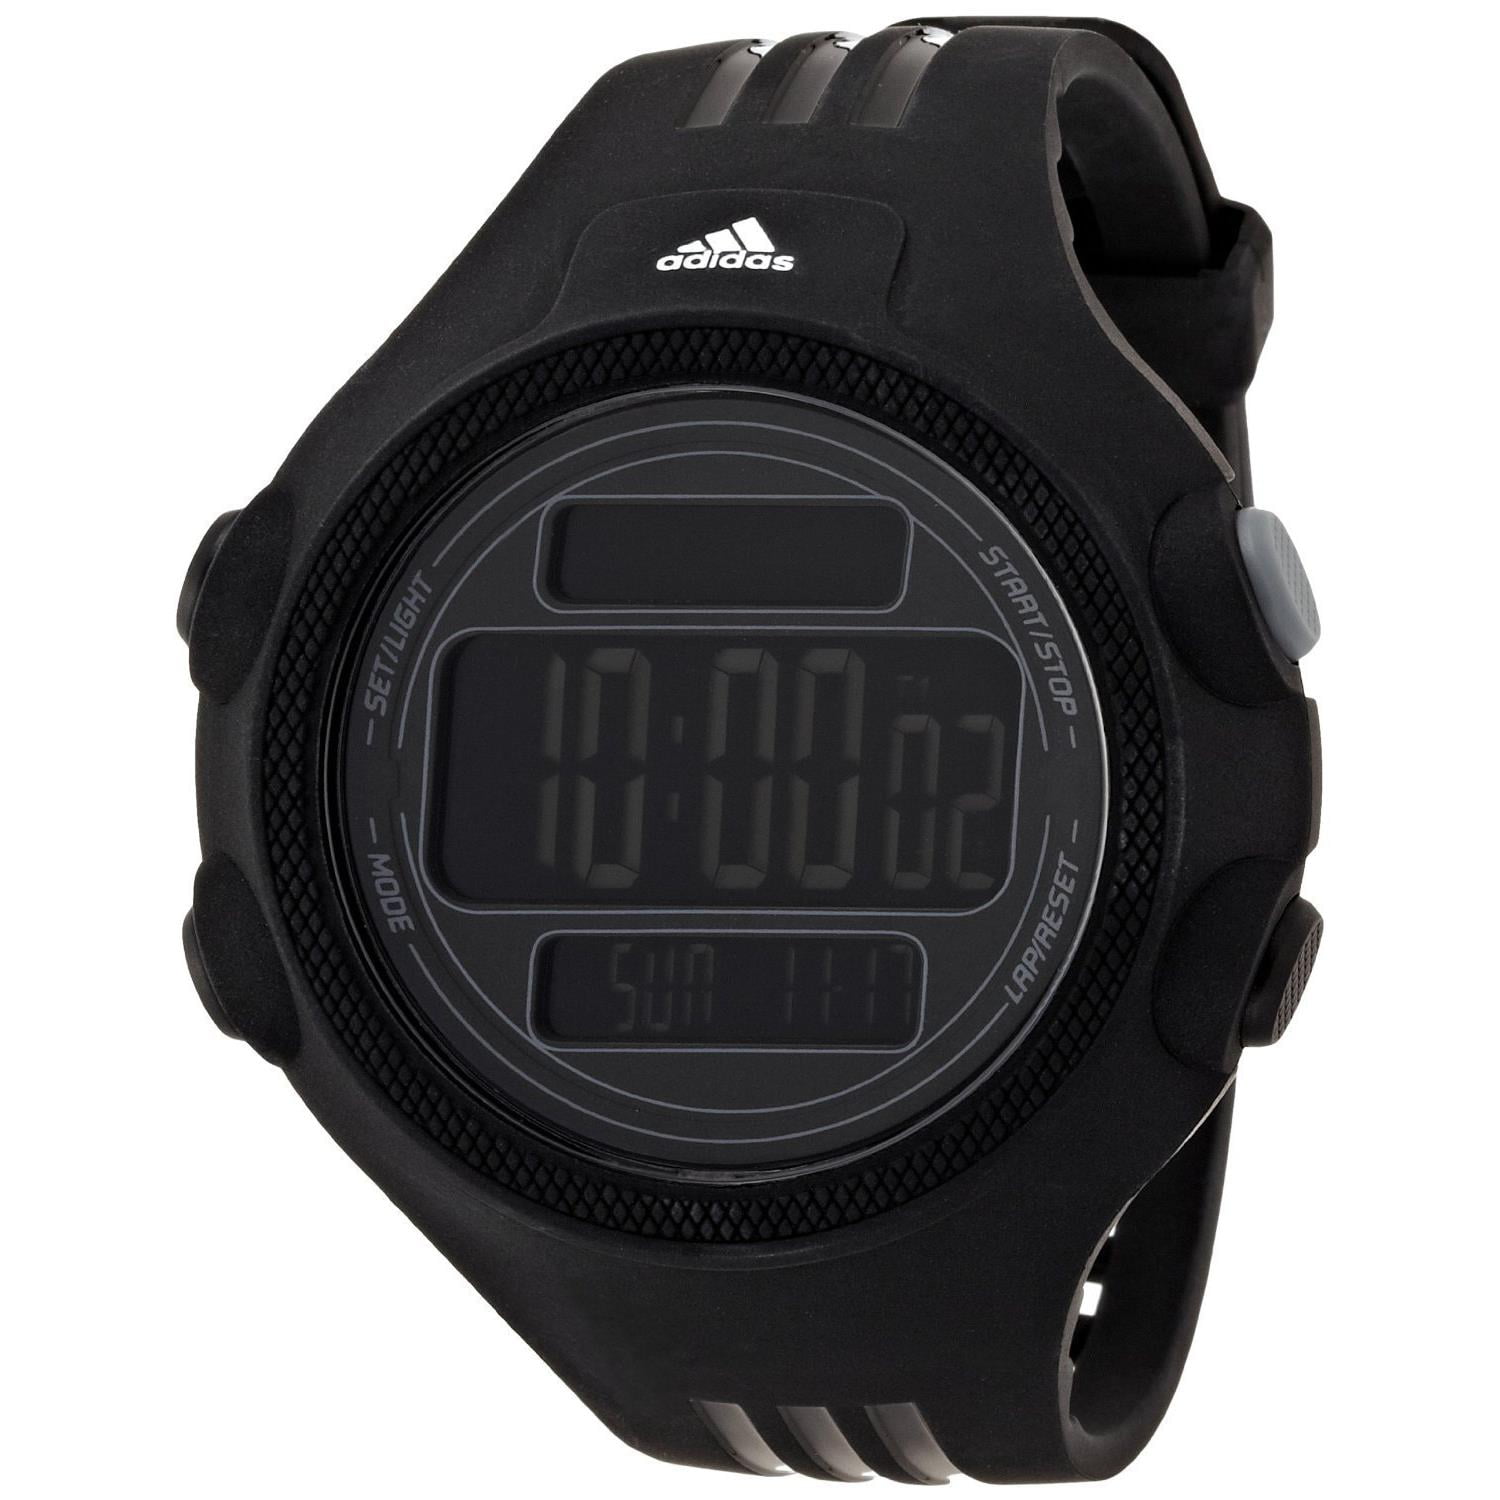 adidas rubber digital watch